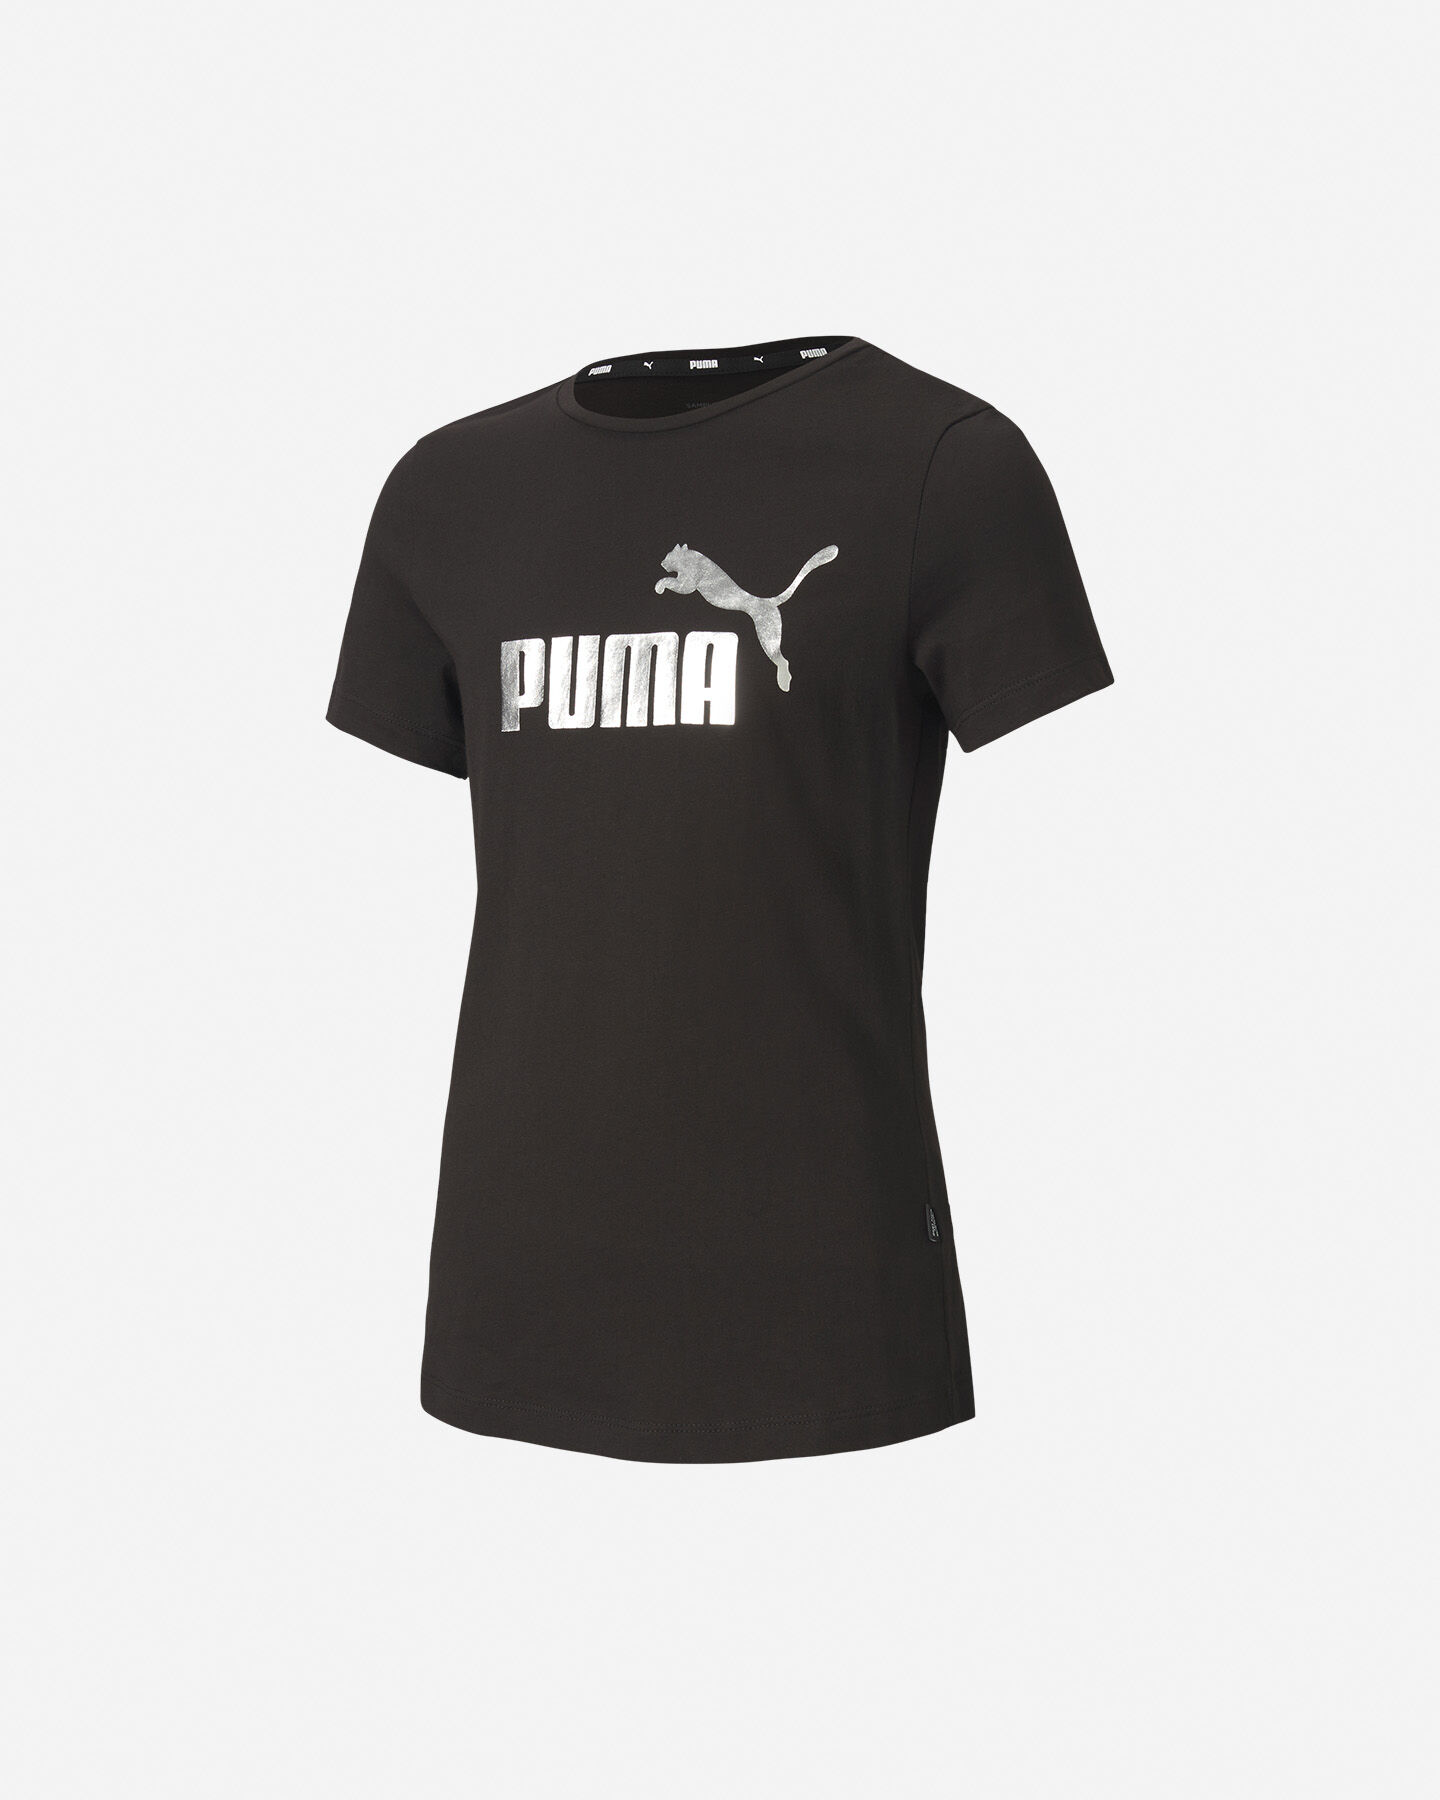  T-Shirt PUMA MC BIG LOGO JR S5234894|51|116 scatto 0